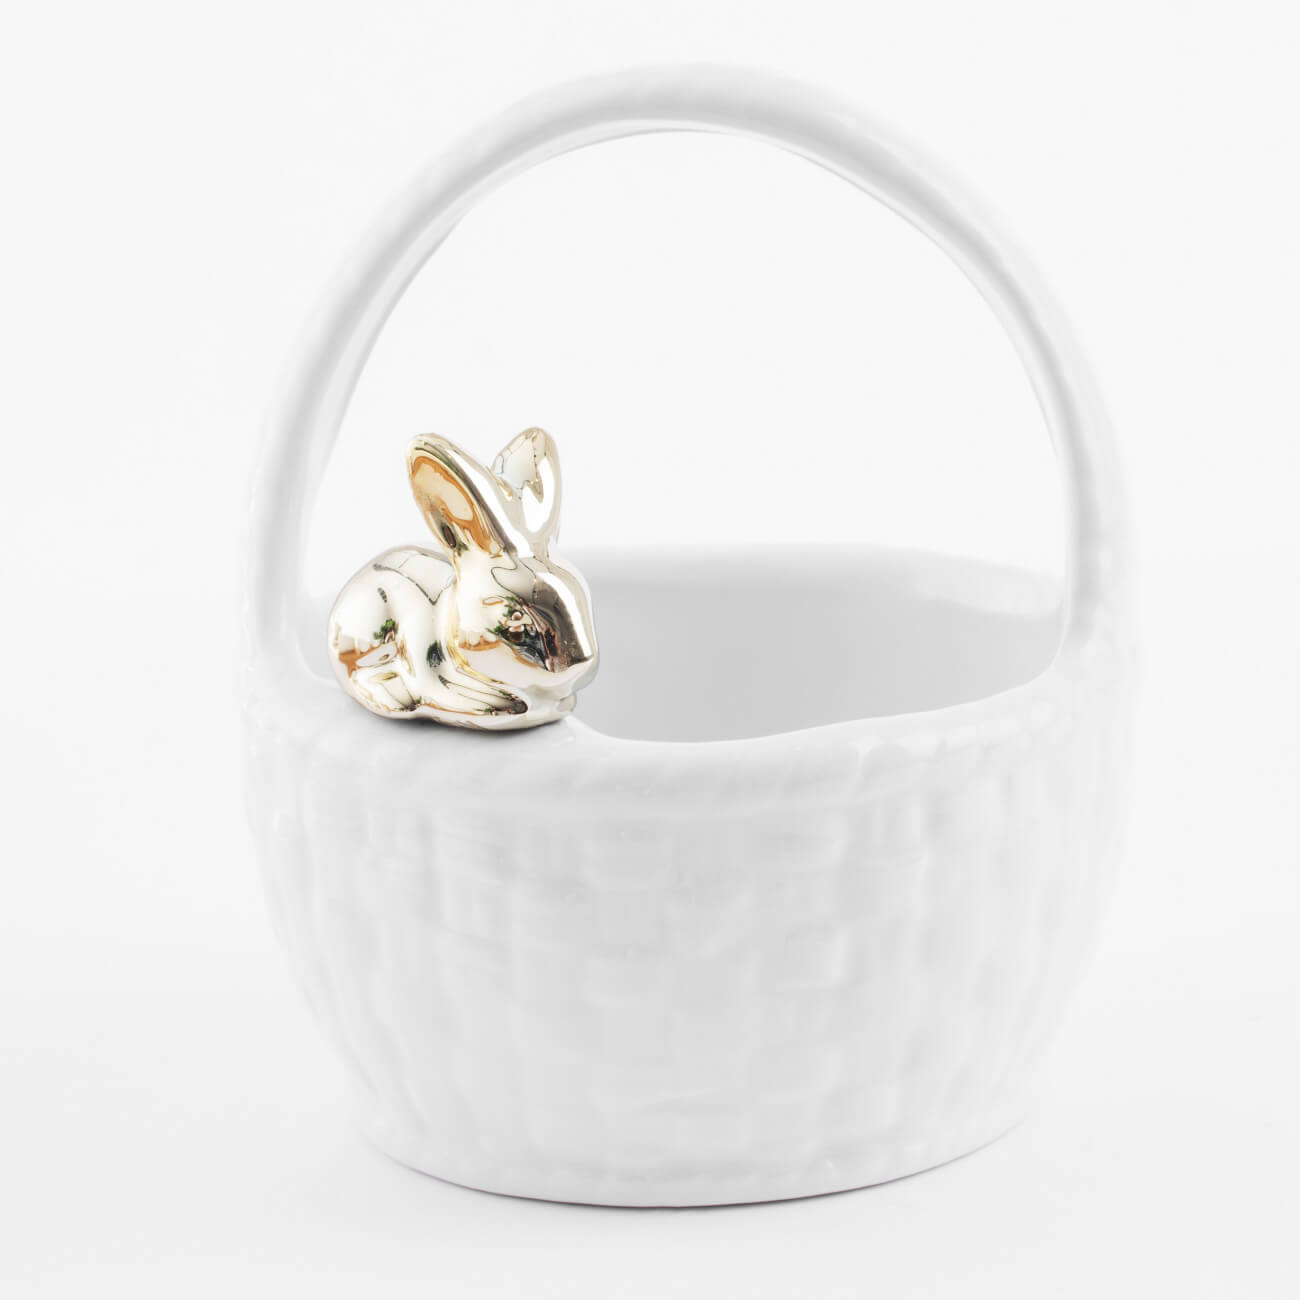 Конфетница, 12х14 см, с ручкой, керамика, белая, Кролик на корзине, Easter gold конфетница 17х17 см керамика белая кролик easter gold